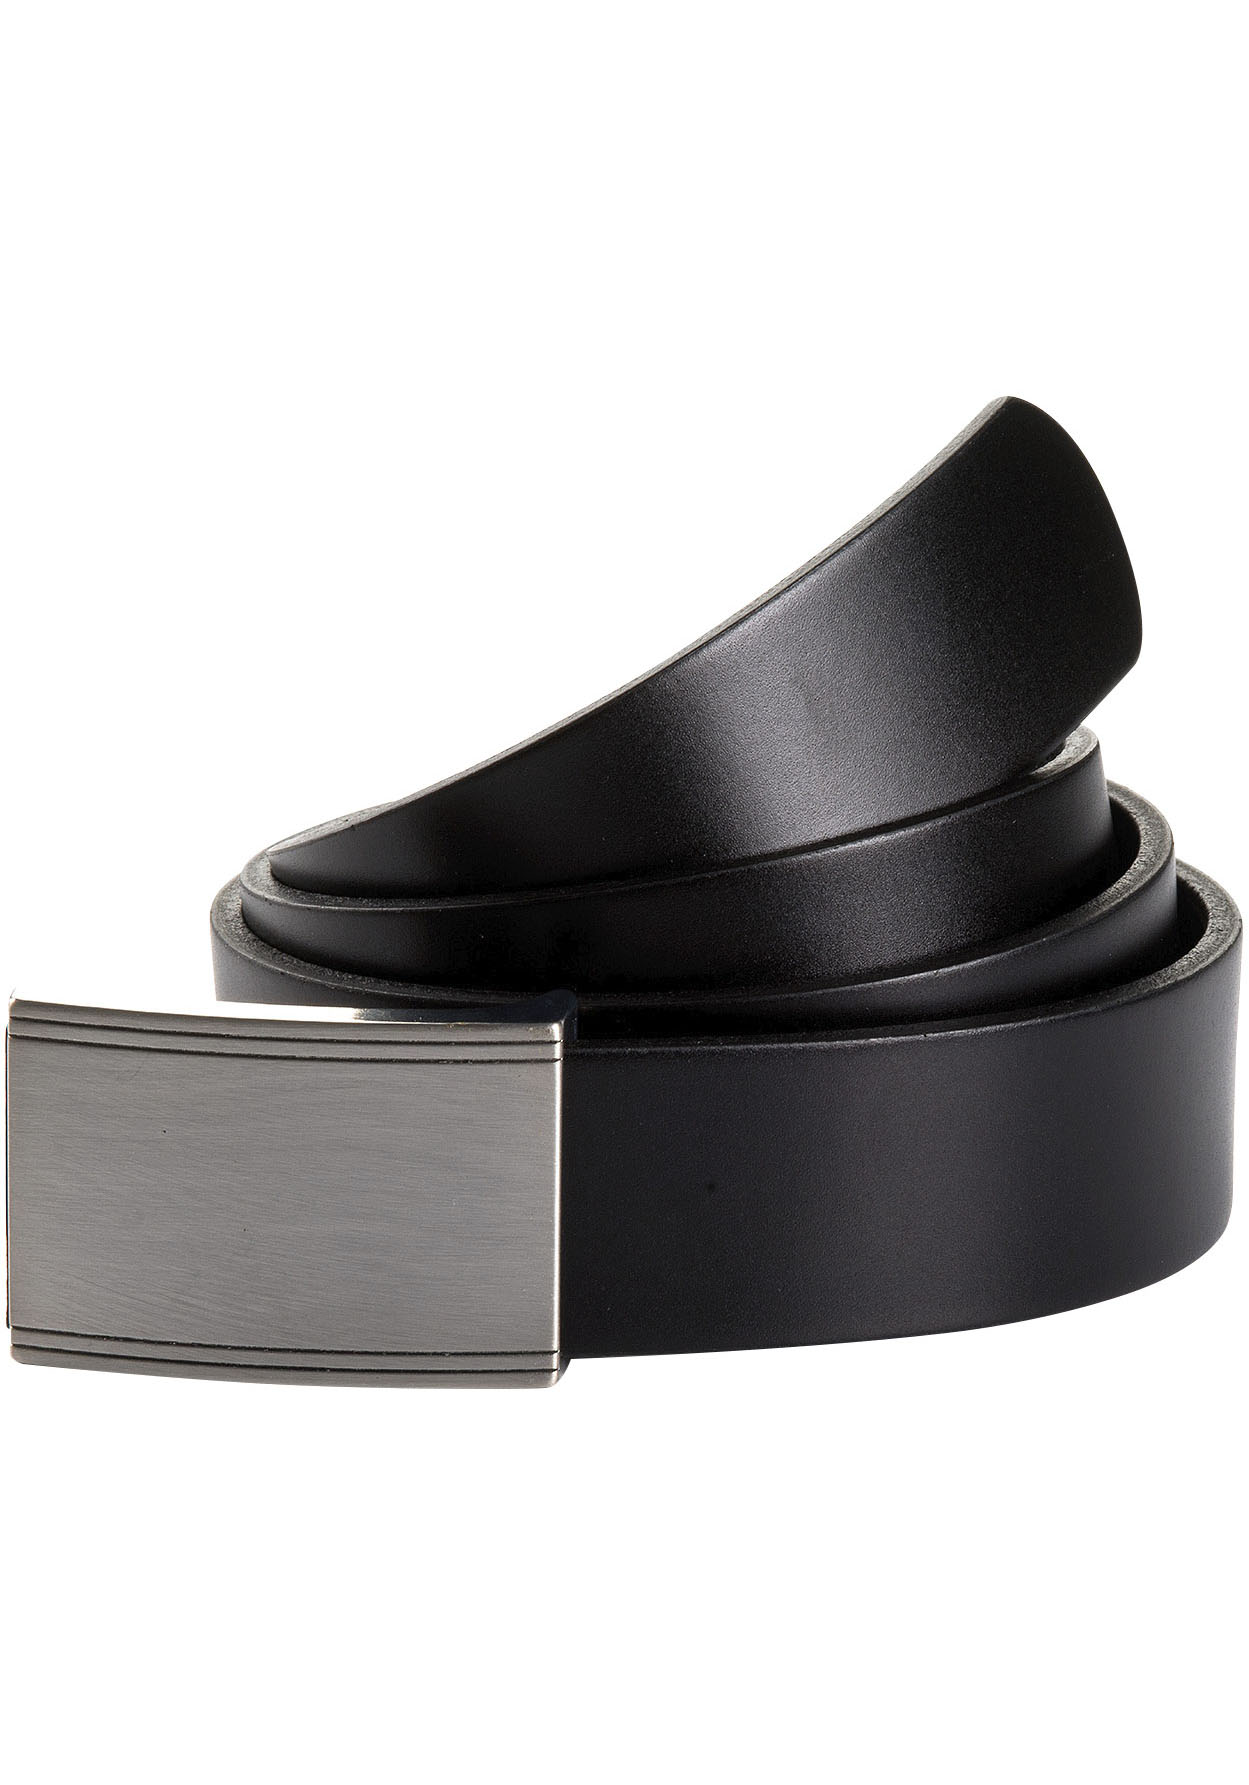 OTTO Crown online bei Anthoni schwarz bestellen Ledergürtel, in dunkelblau und Wendegürtel